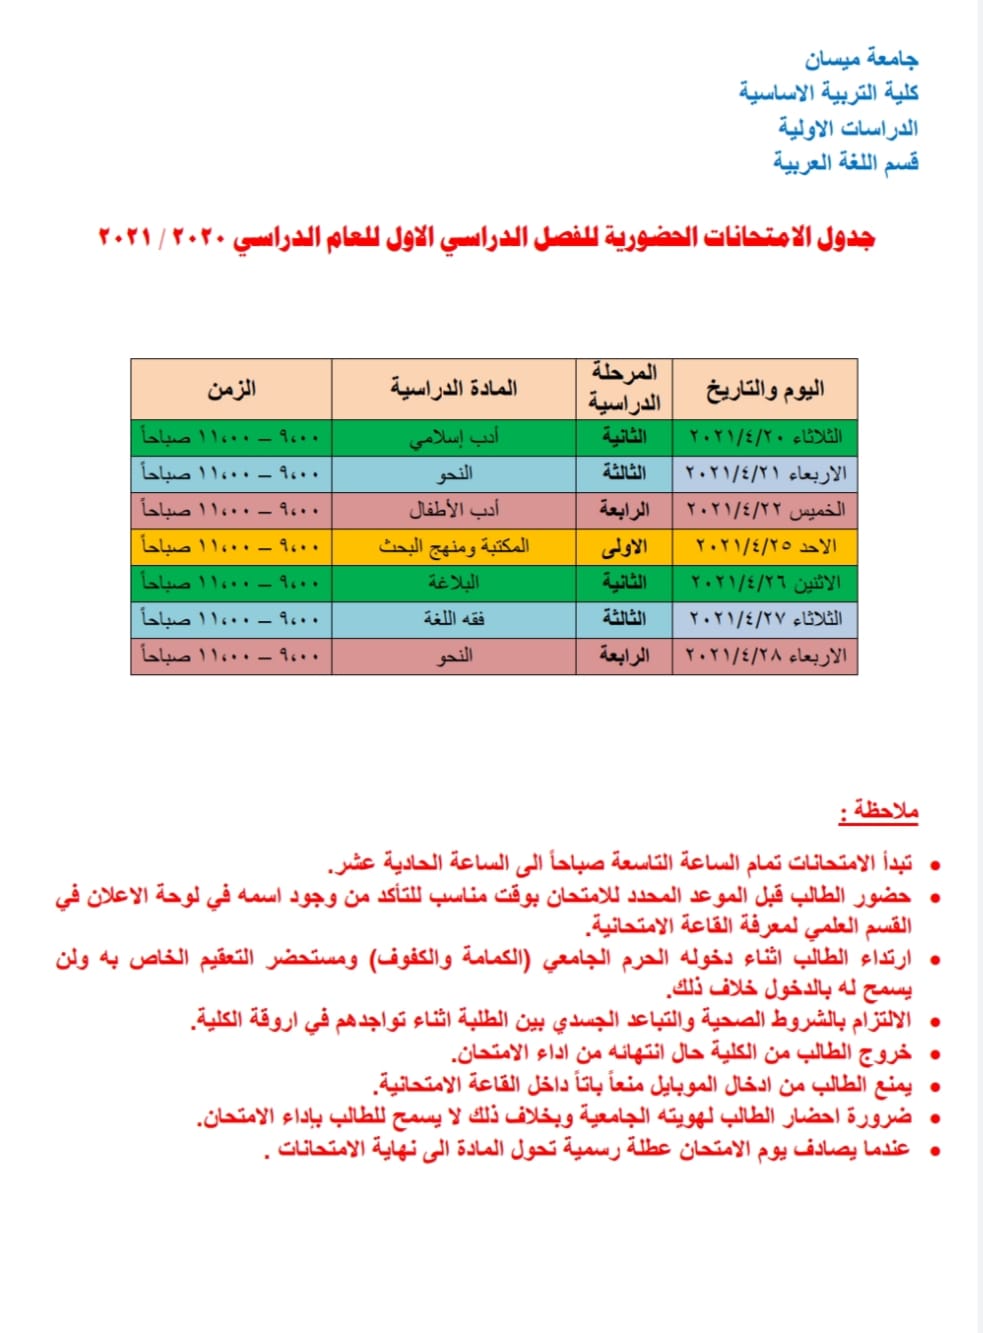 جدول الأمتحانات الحضورية لطلبة قسم اللغة العربية في كلية التربية الأساسية للفصل الدراسي الأول للعام الدراسي 2020 – 2021 .